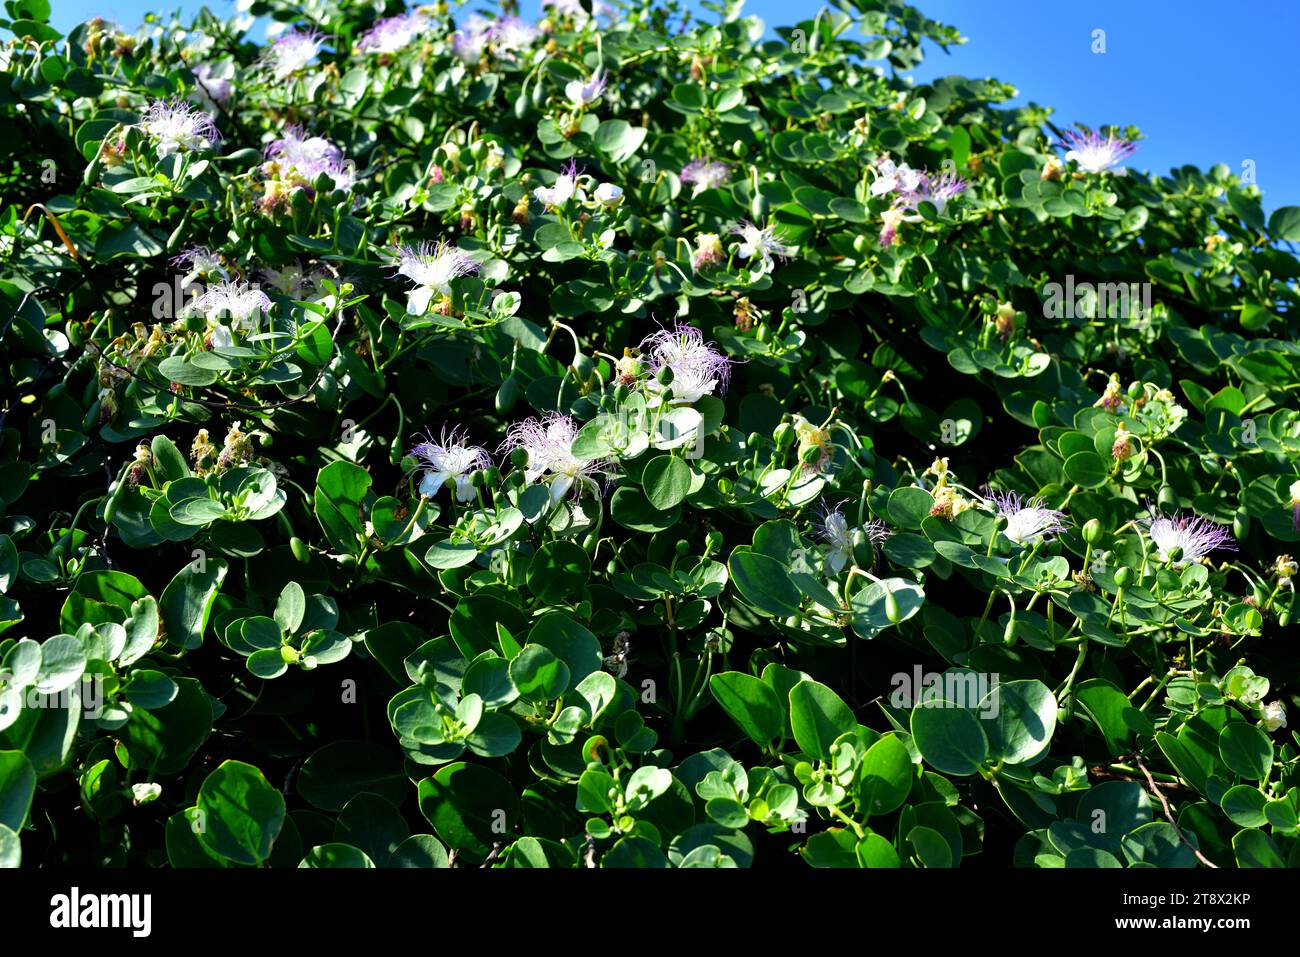 Il cespuglio di capperi (Capparis spinosa) è un arbusto spinoso presente in tutto il bacino del Mediterraneo. I suoi boccioli di fiori (capperi) e i frutti (bacche di cappero) sono commestibili. T Foto Stock